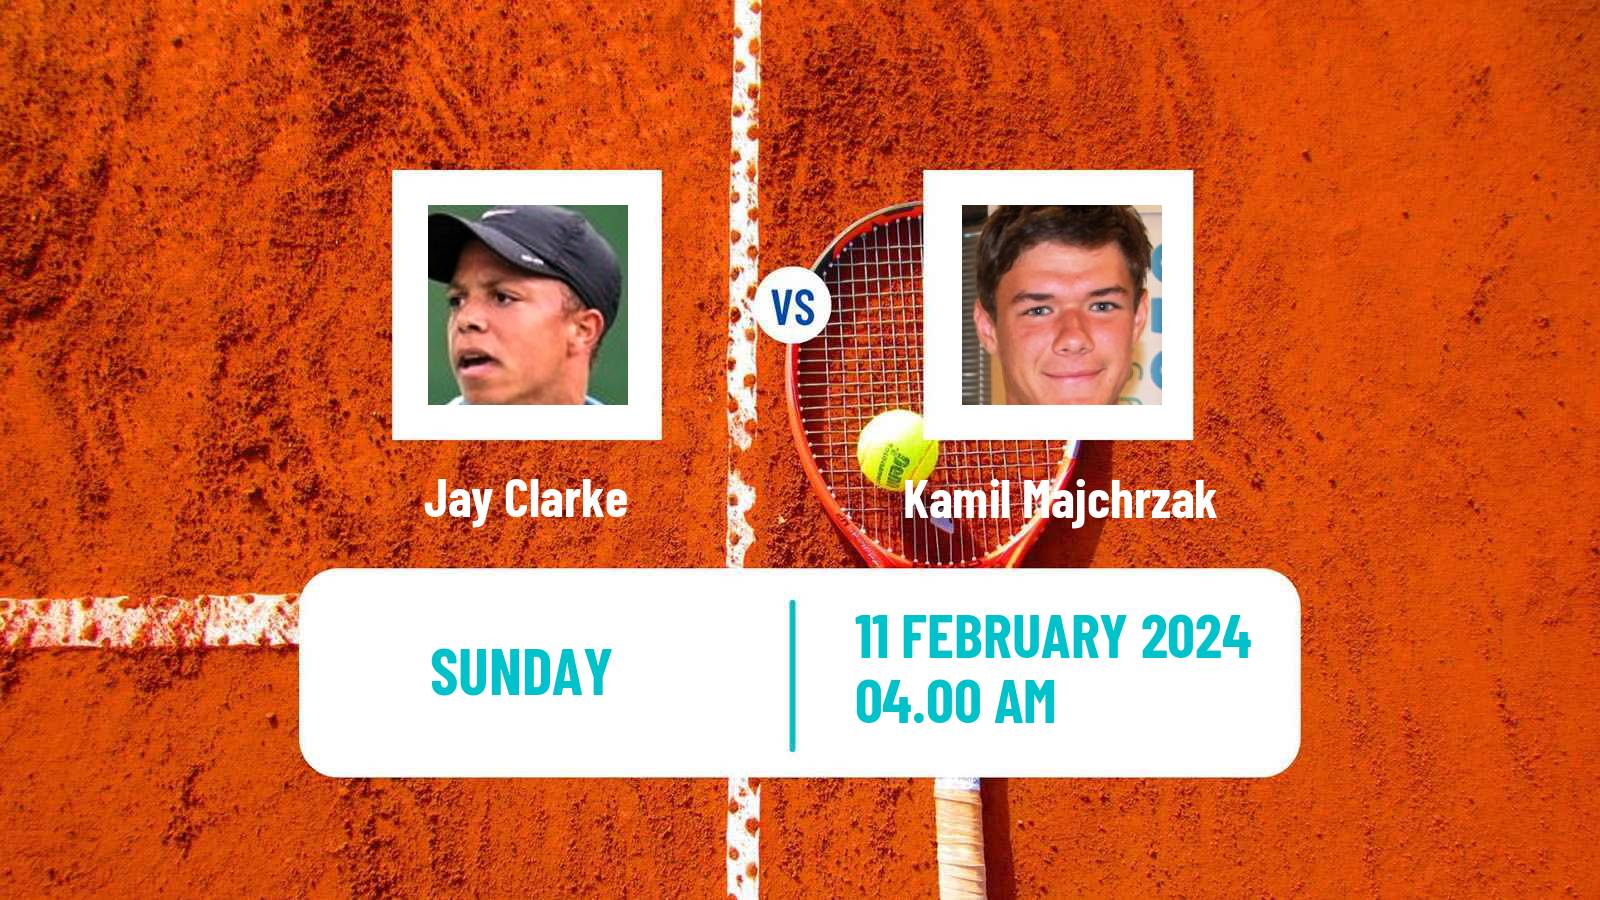 Tennis ITF M25 Hammamet 2 Men Jay Clarke - Kamil Majchrzak